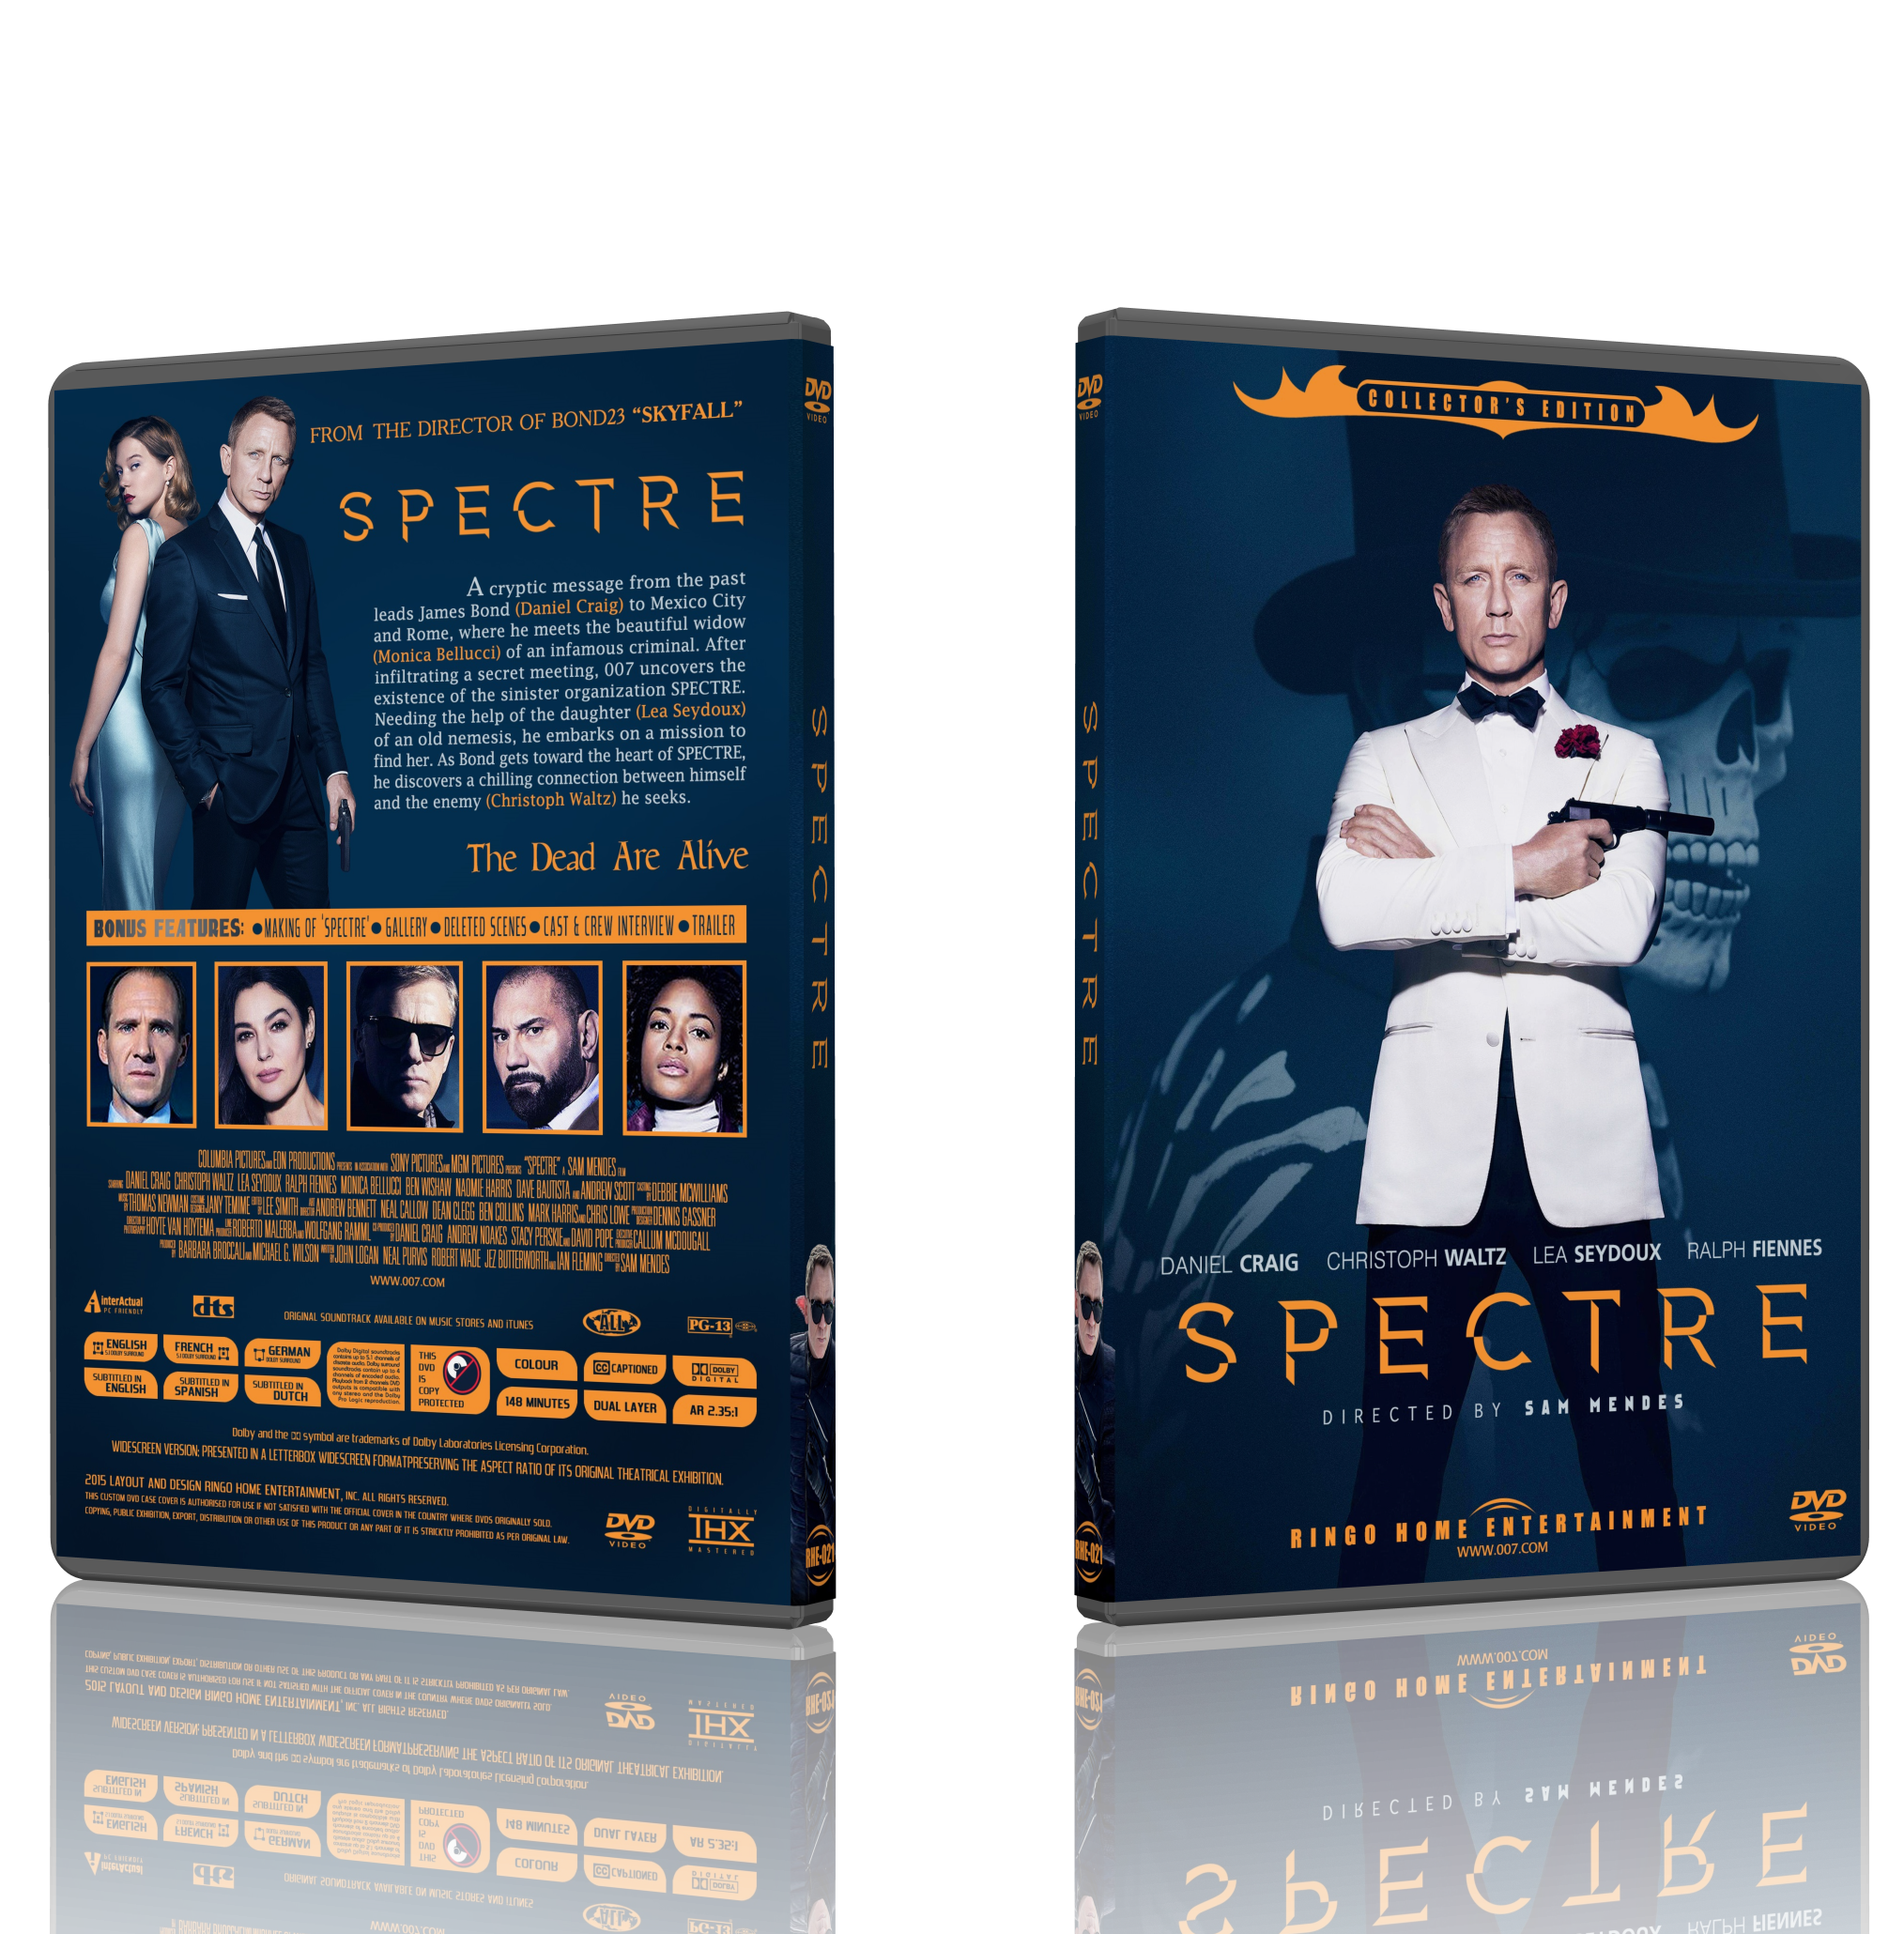 Spectre 007 (2015) box cover